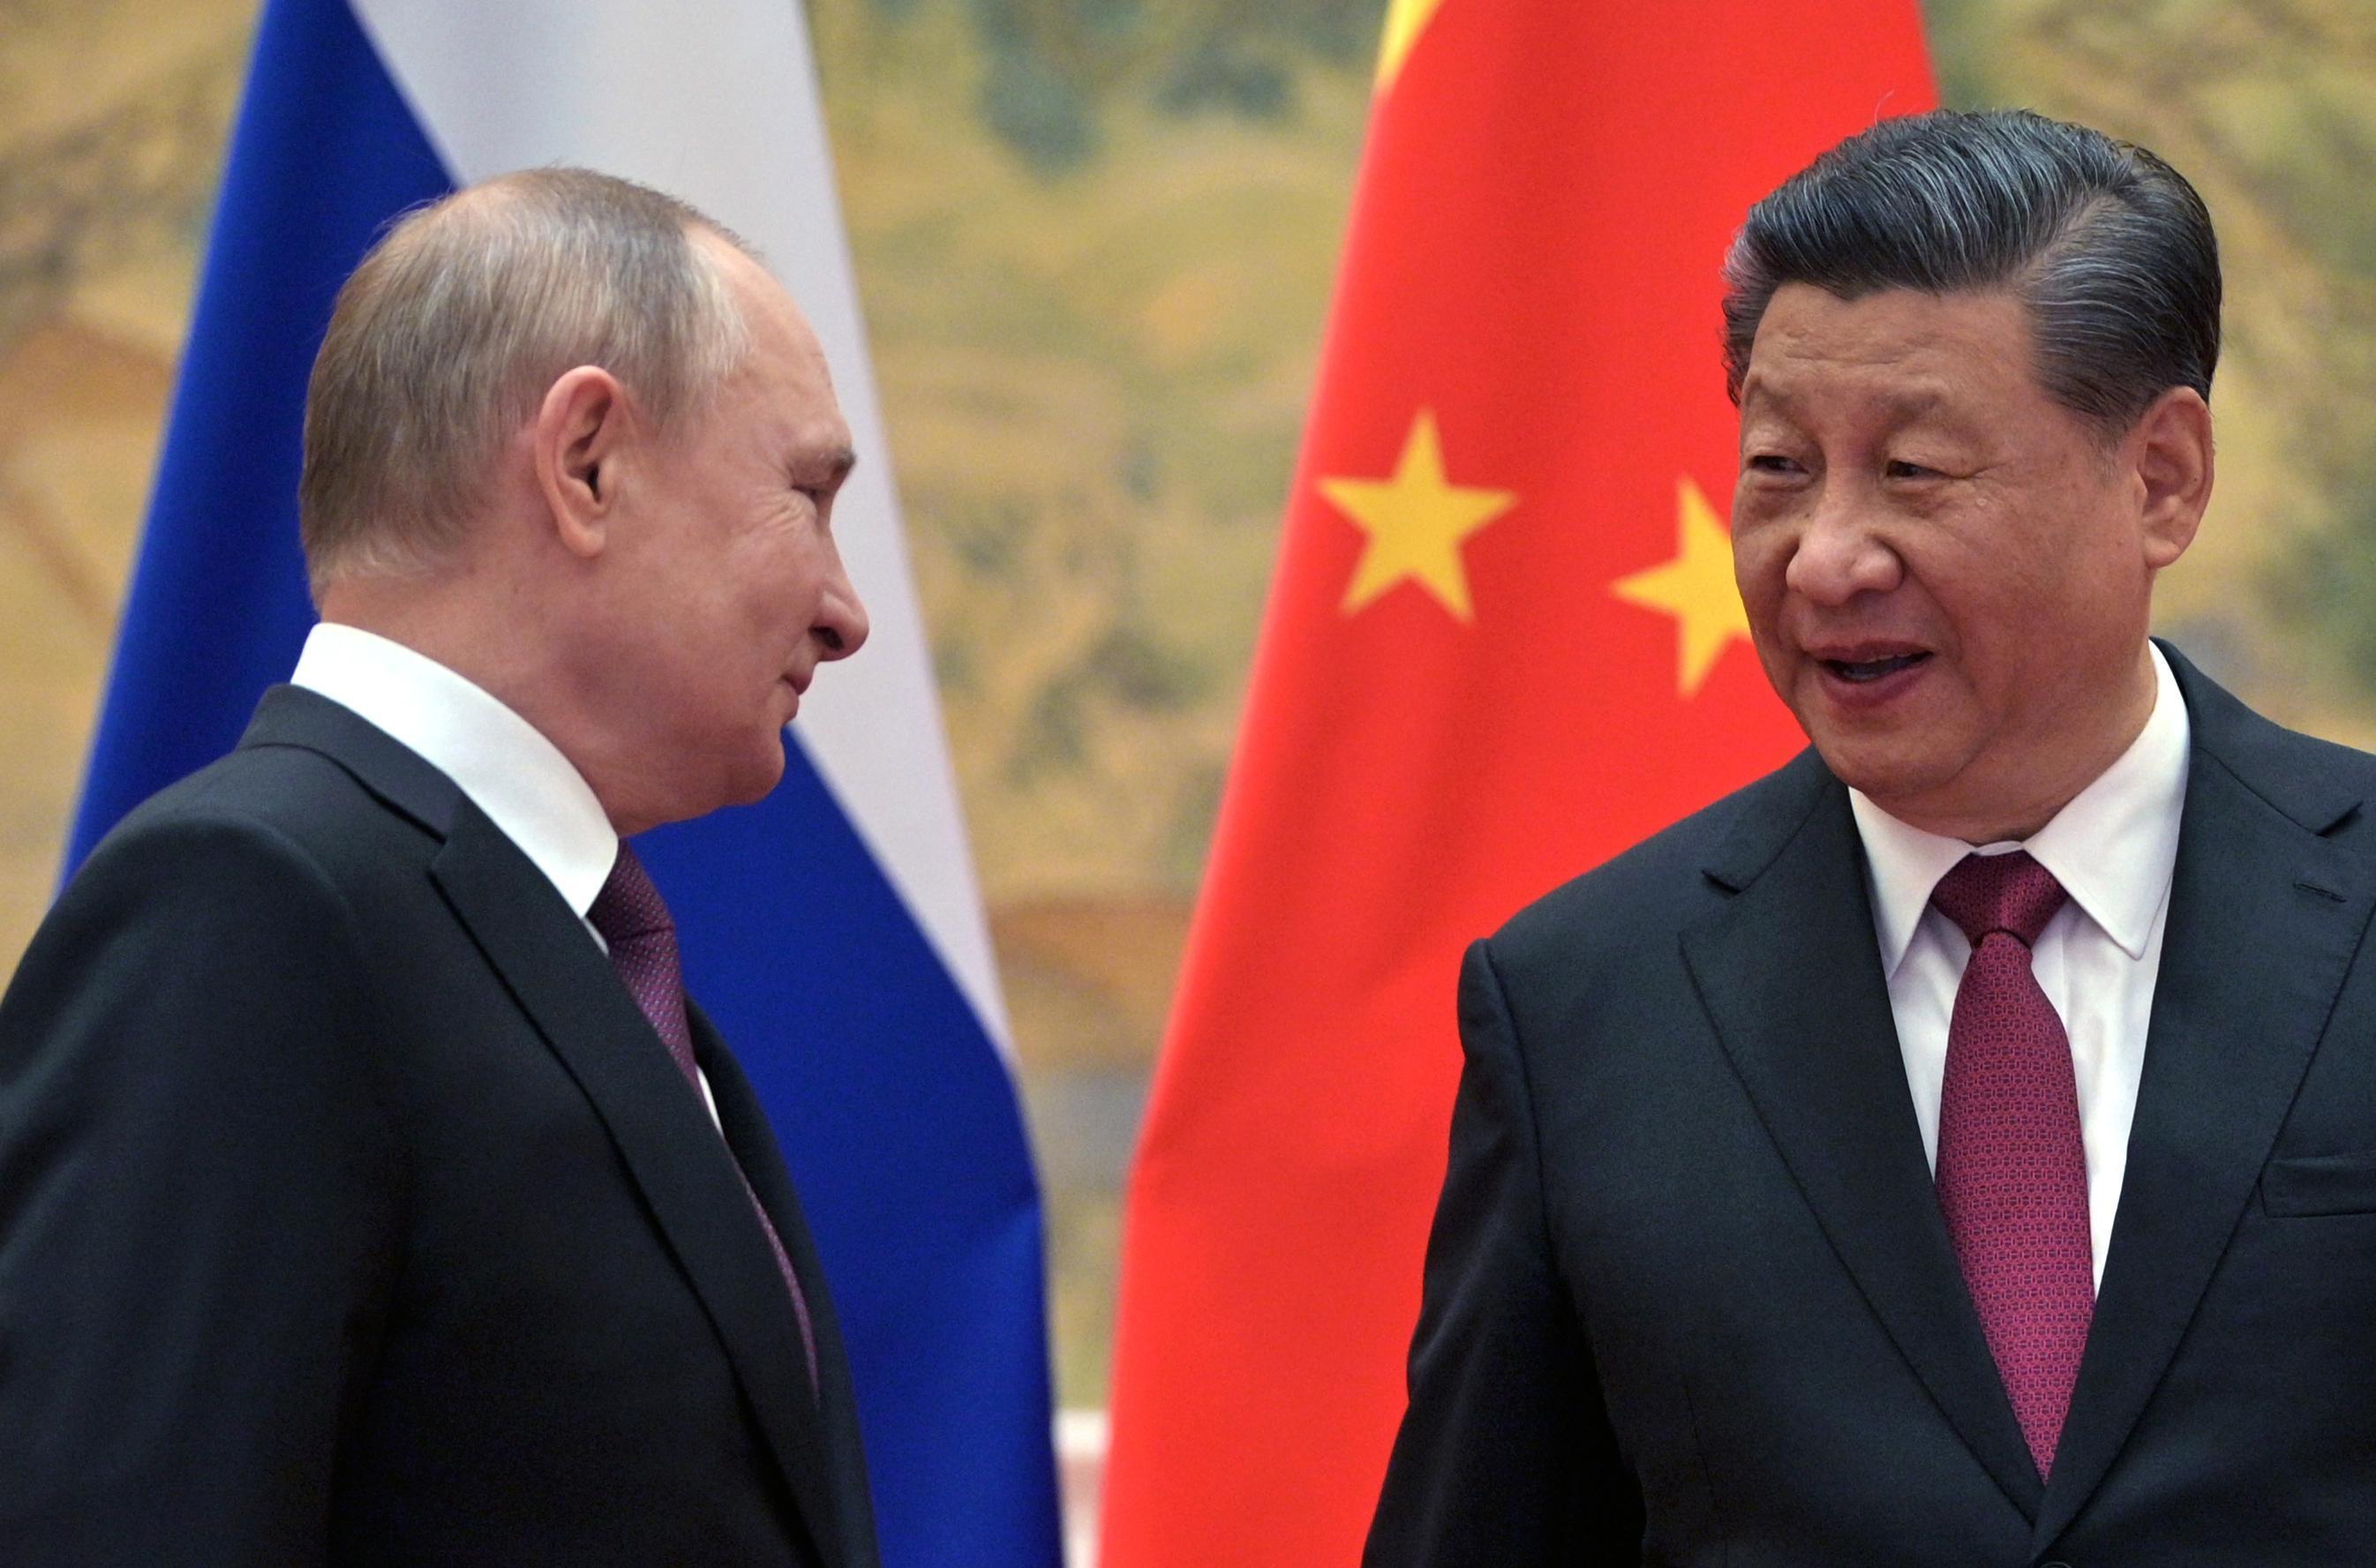 Rusyaya Çinden destek: Doğal gaz anlaşması